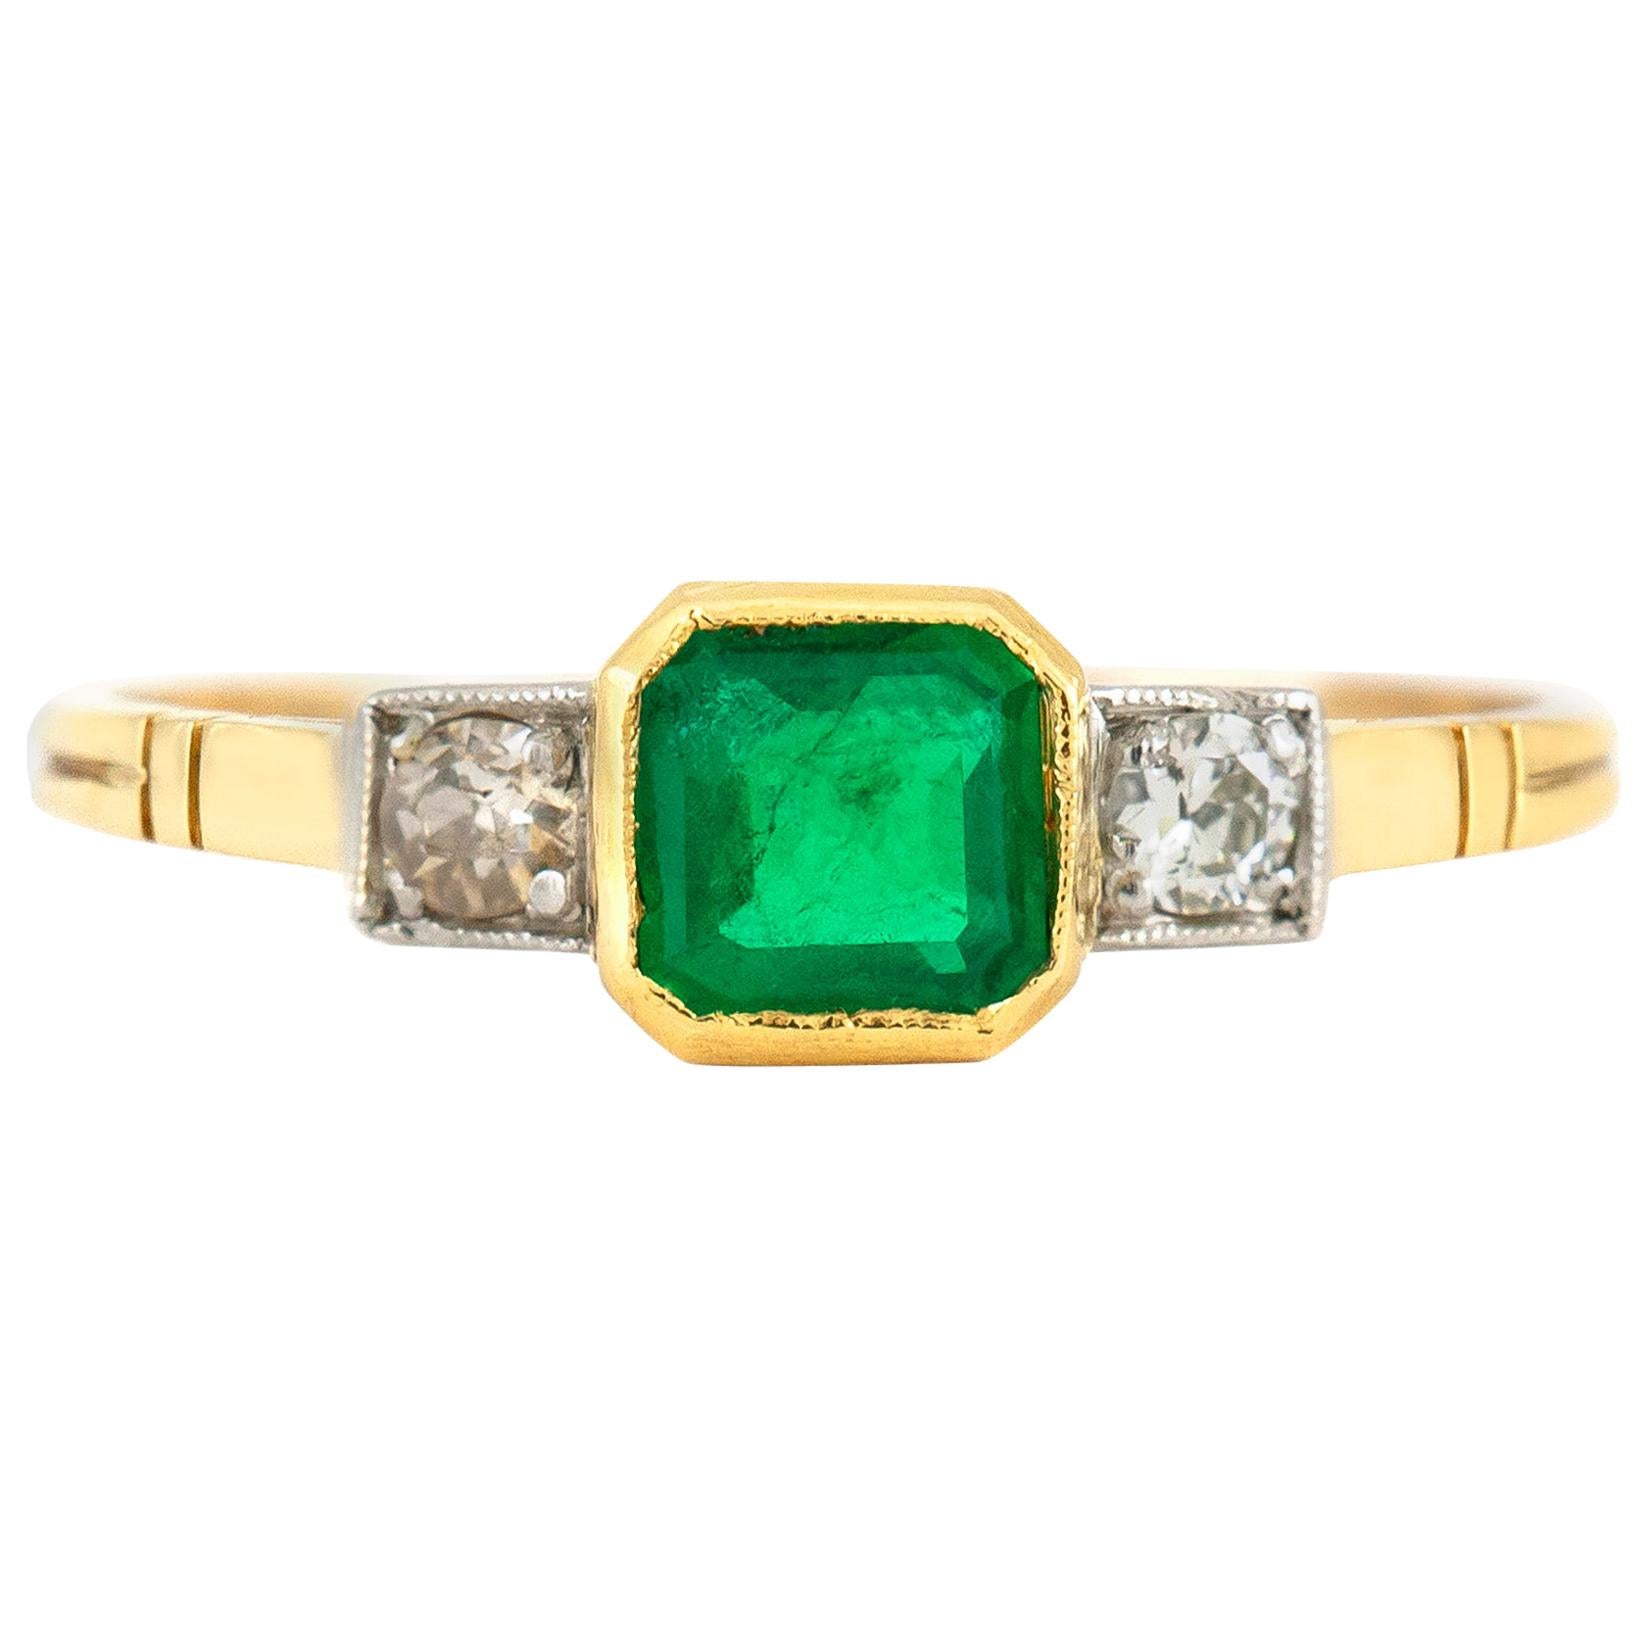 1940er Jahre Verlobungsring mit Smaragd in der Mitte und zwei runden Diamanten auf der Seite